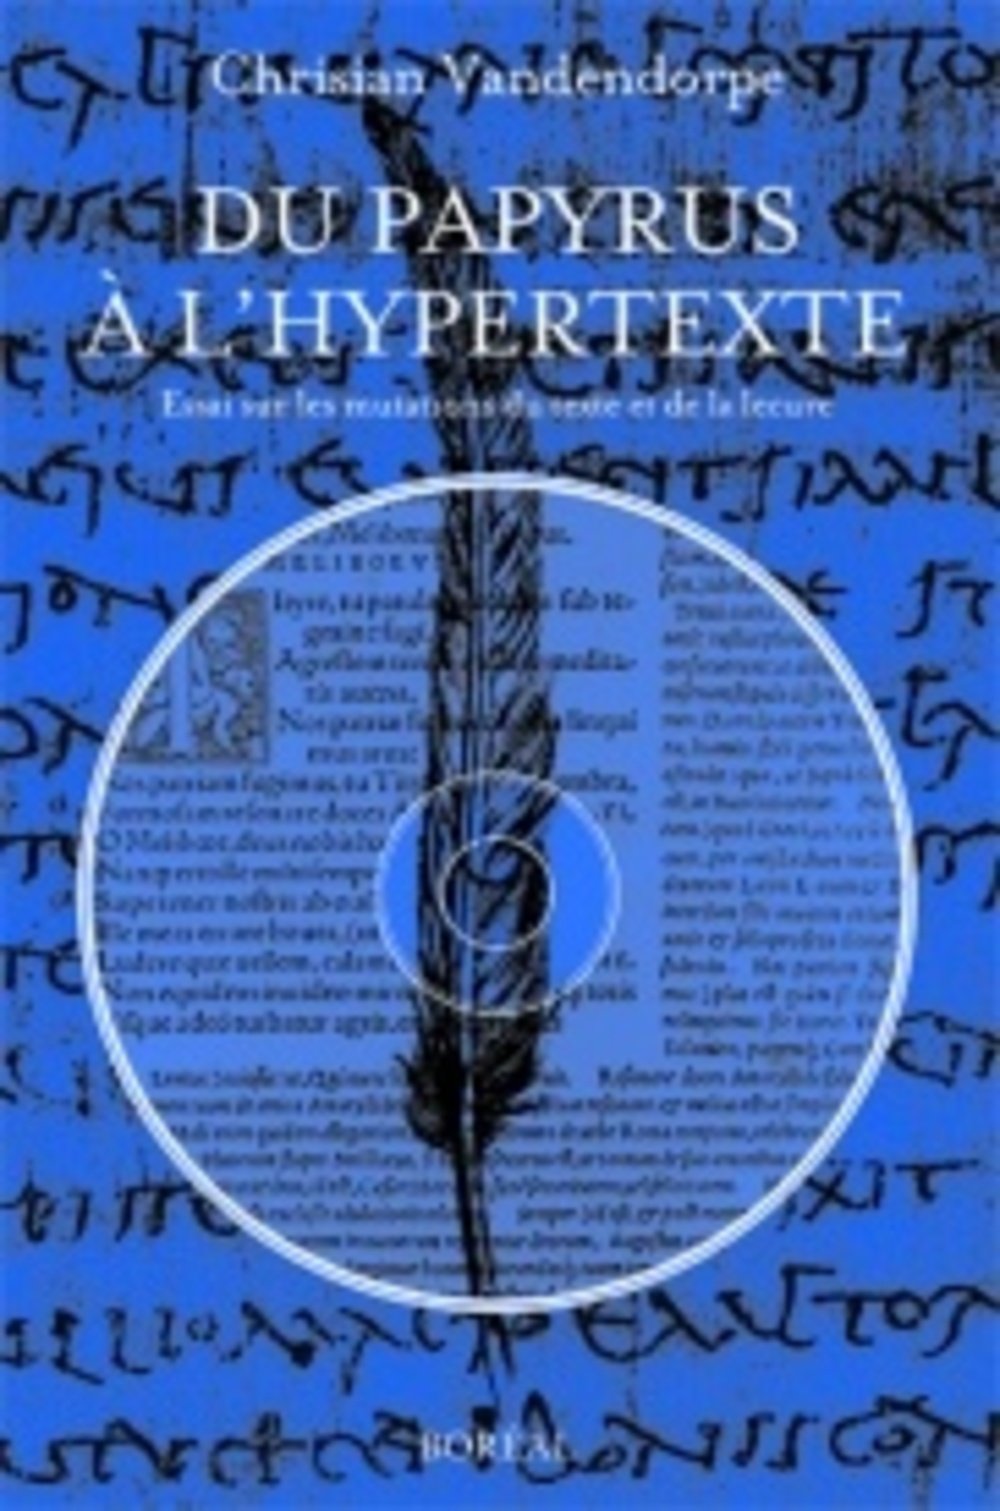 Livre ISBN 2890529797 Du papyrus à l'hypertexte (Christian Vandendorpe)